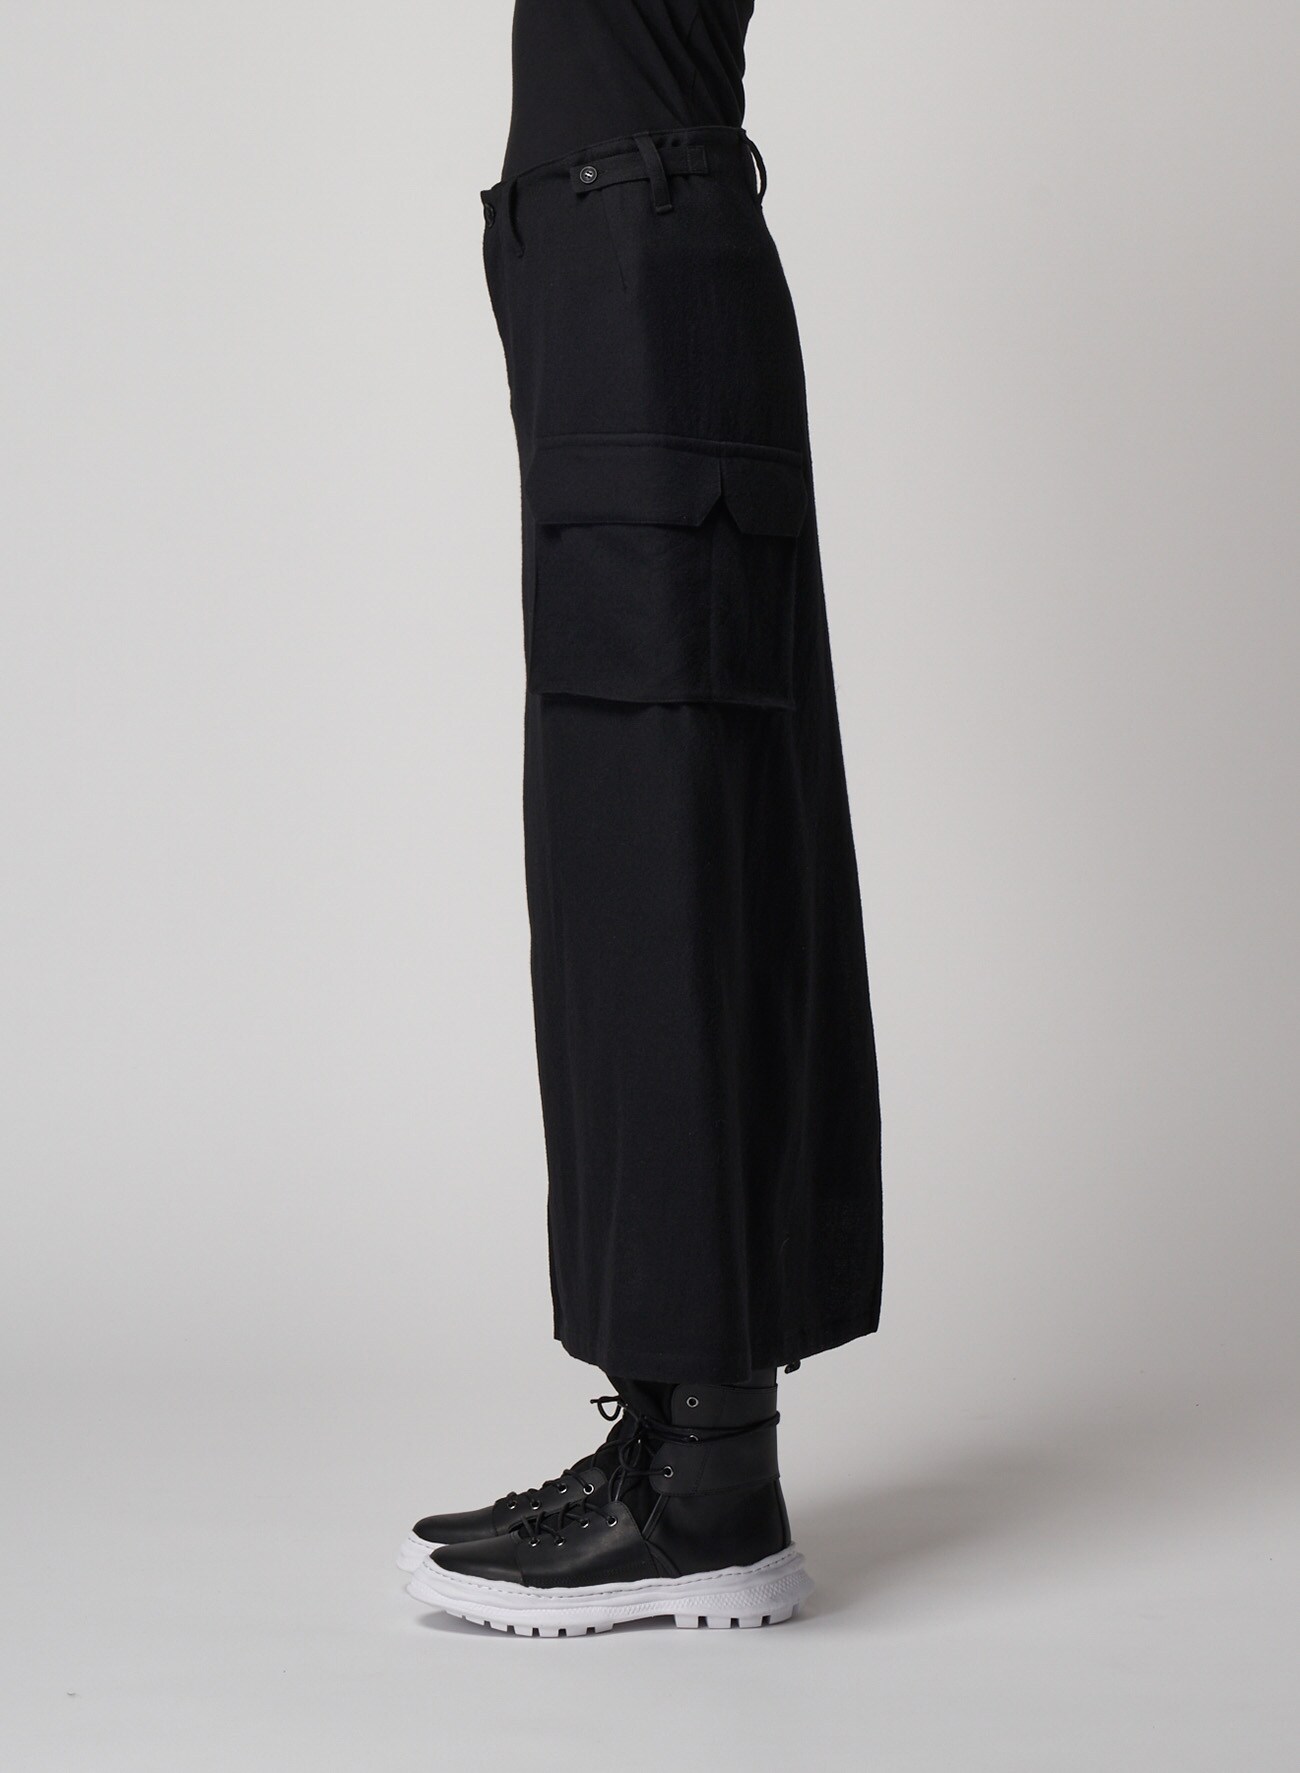 Fulling Serge C Asymmetry Tight Skirt